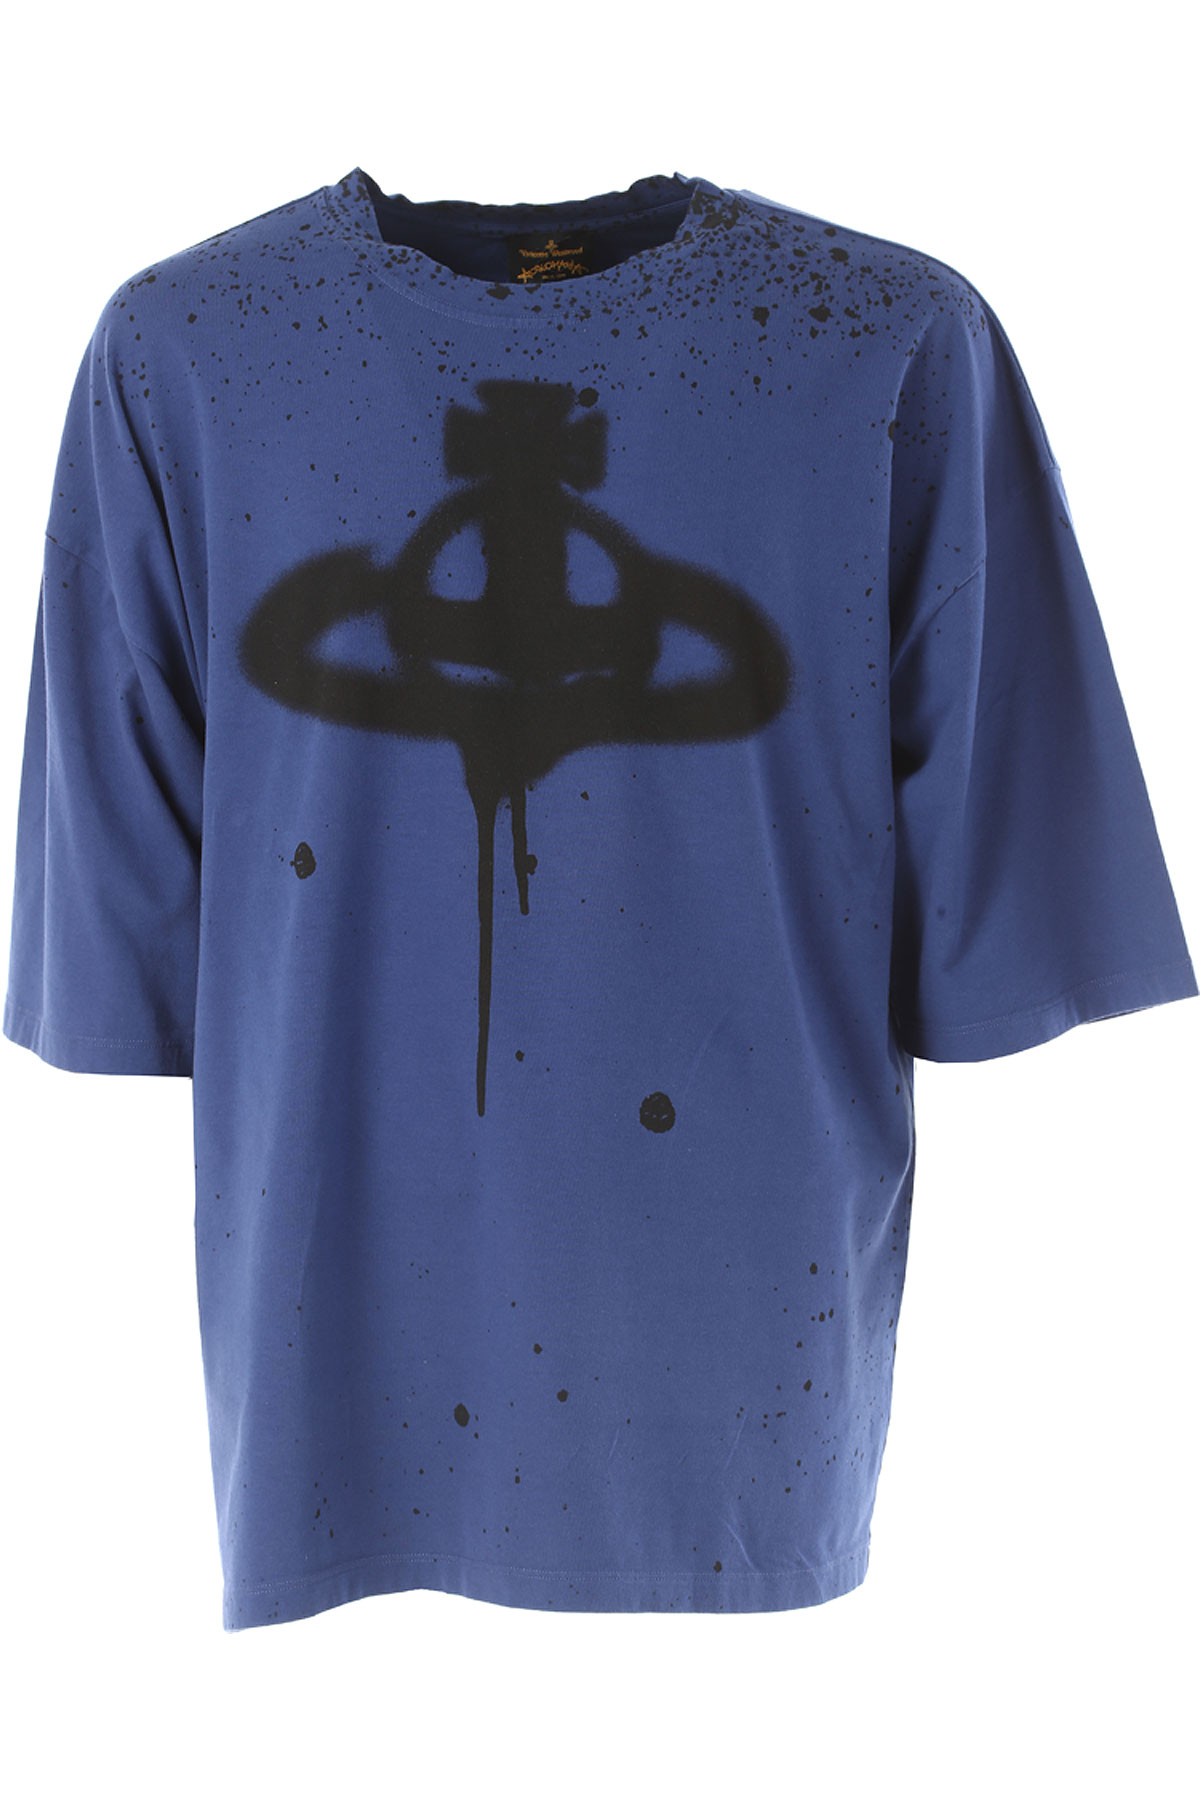 Vivienne Westwood T-shirt Homme , Bleu, Coton, 2017, L M